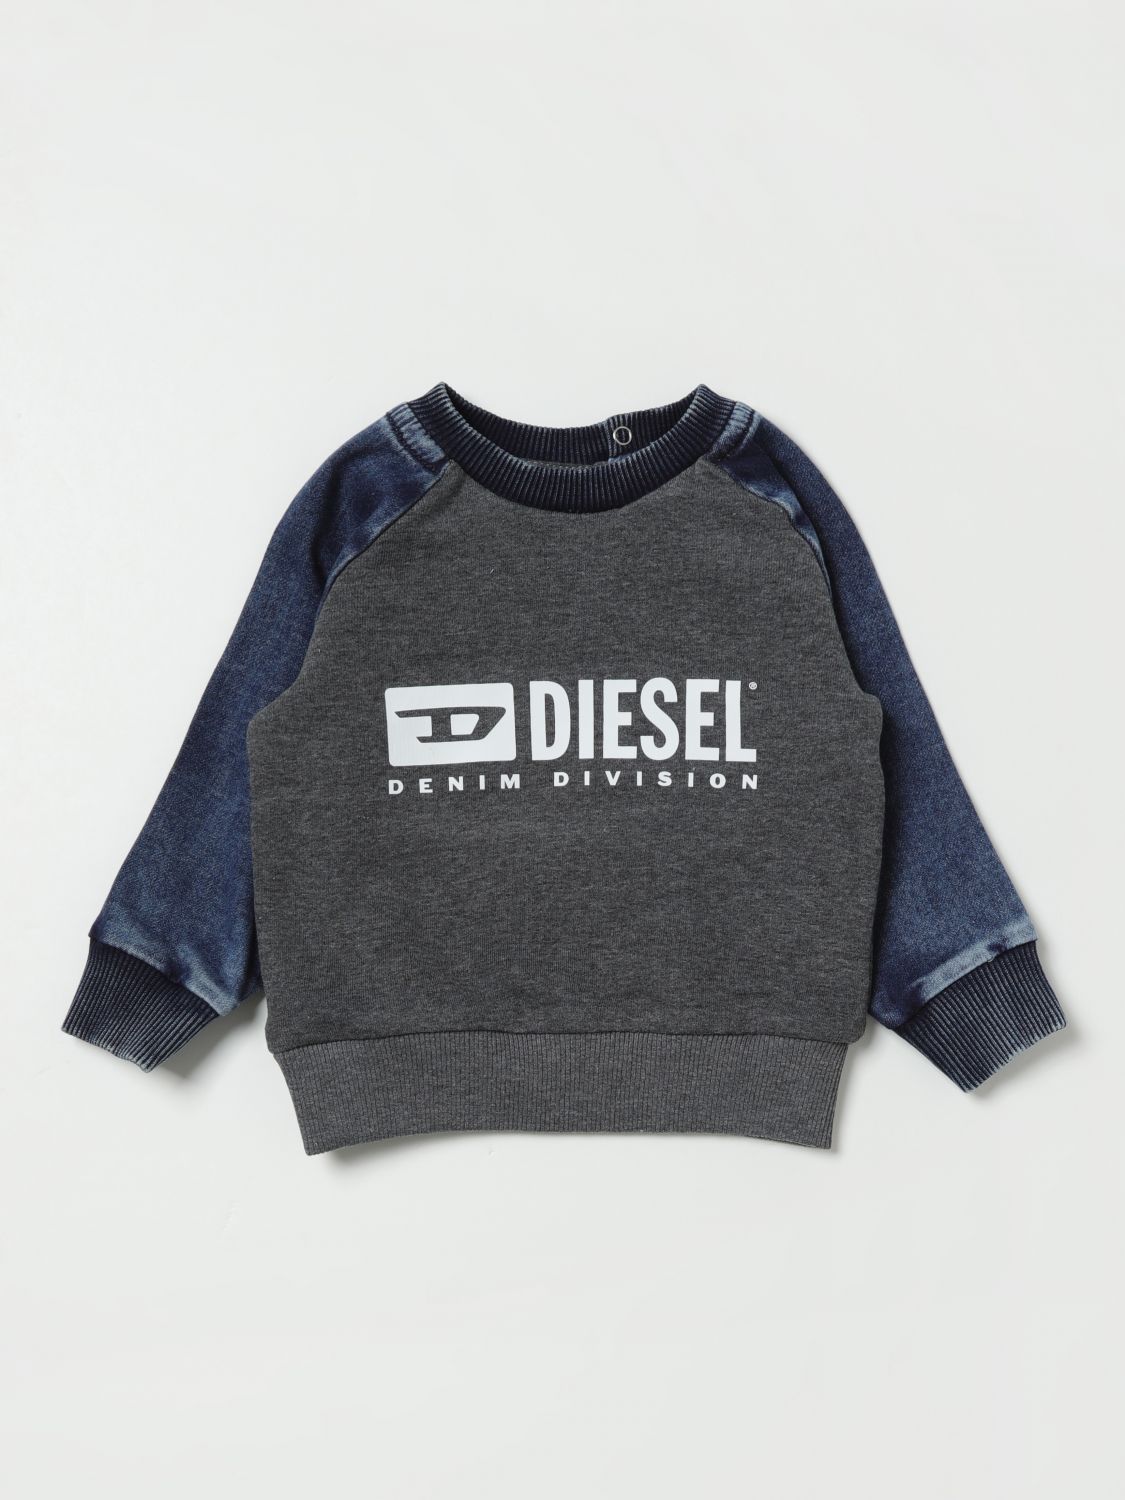 Diesel Babies' Sweater  Kids Color Denim